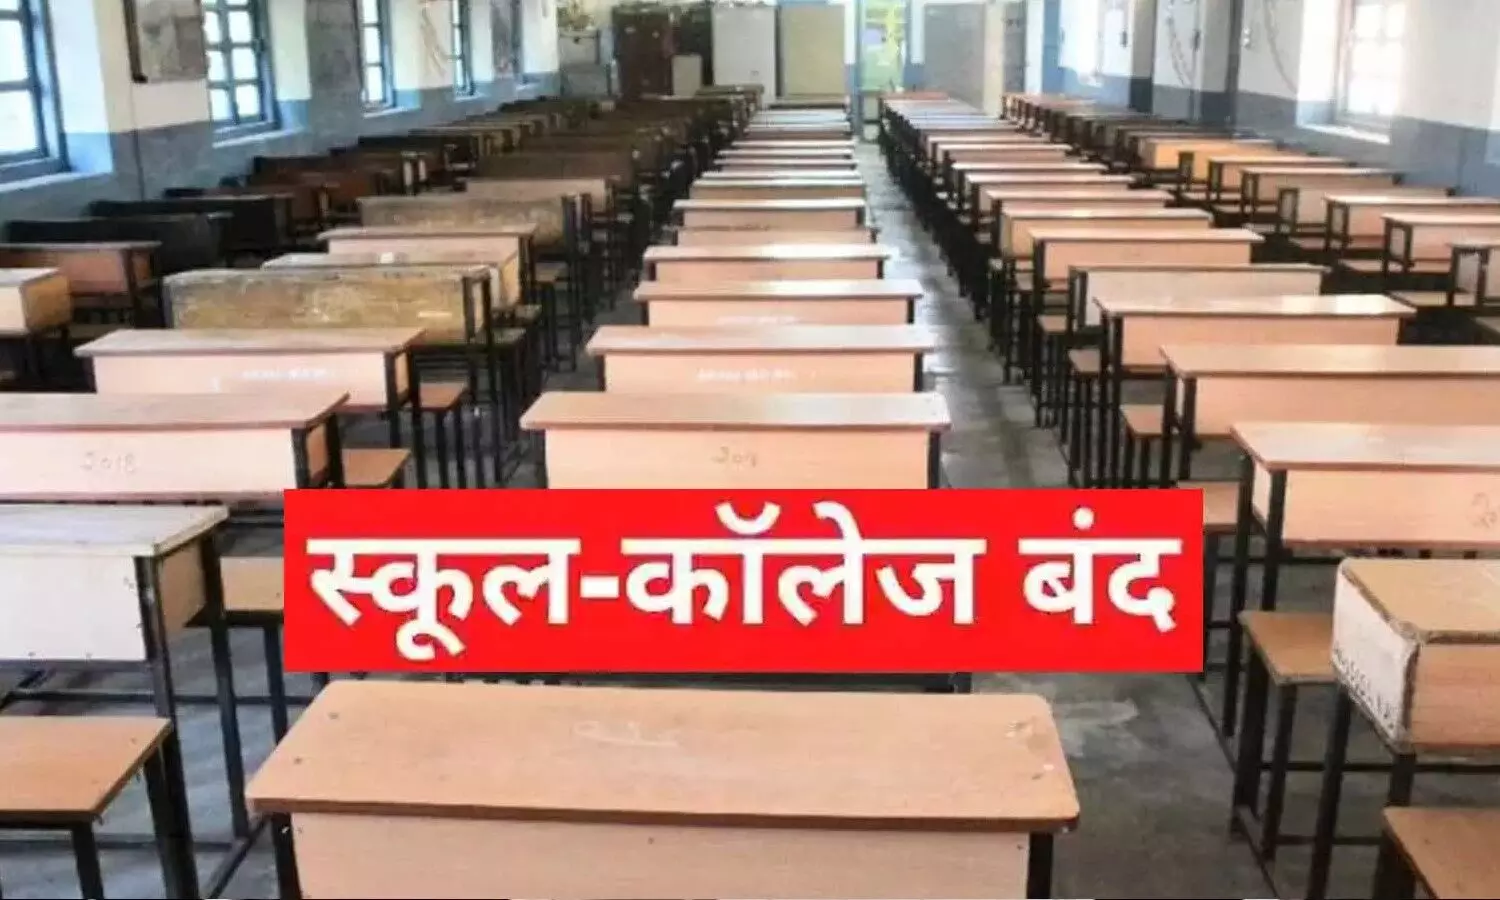 Delhi Schools Closed: दिल्ली में संक्रमण के बढ़े मामले, जल्द बंद होगें स्कूल, नए वैरियंट से बच्चों को खतरा